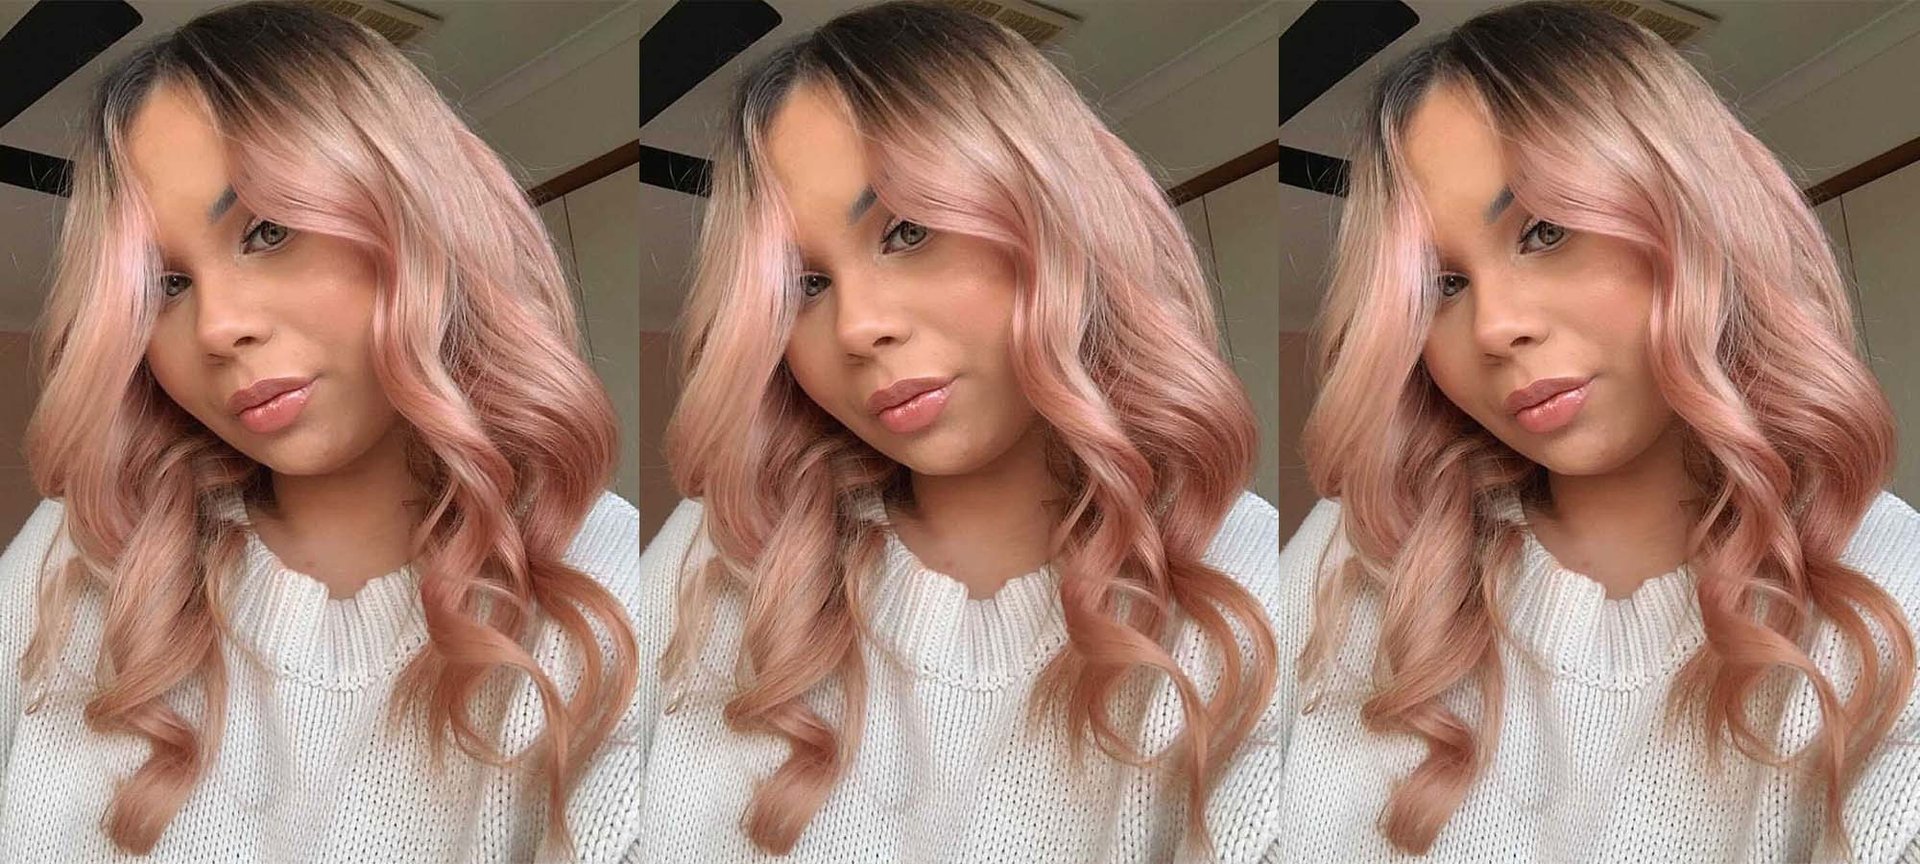 Buy Semi-Permanent Pink Hair Color Duo